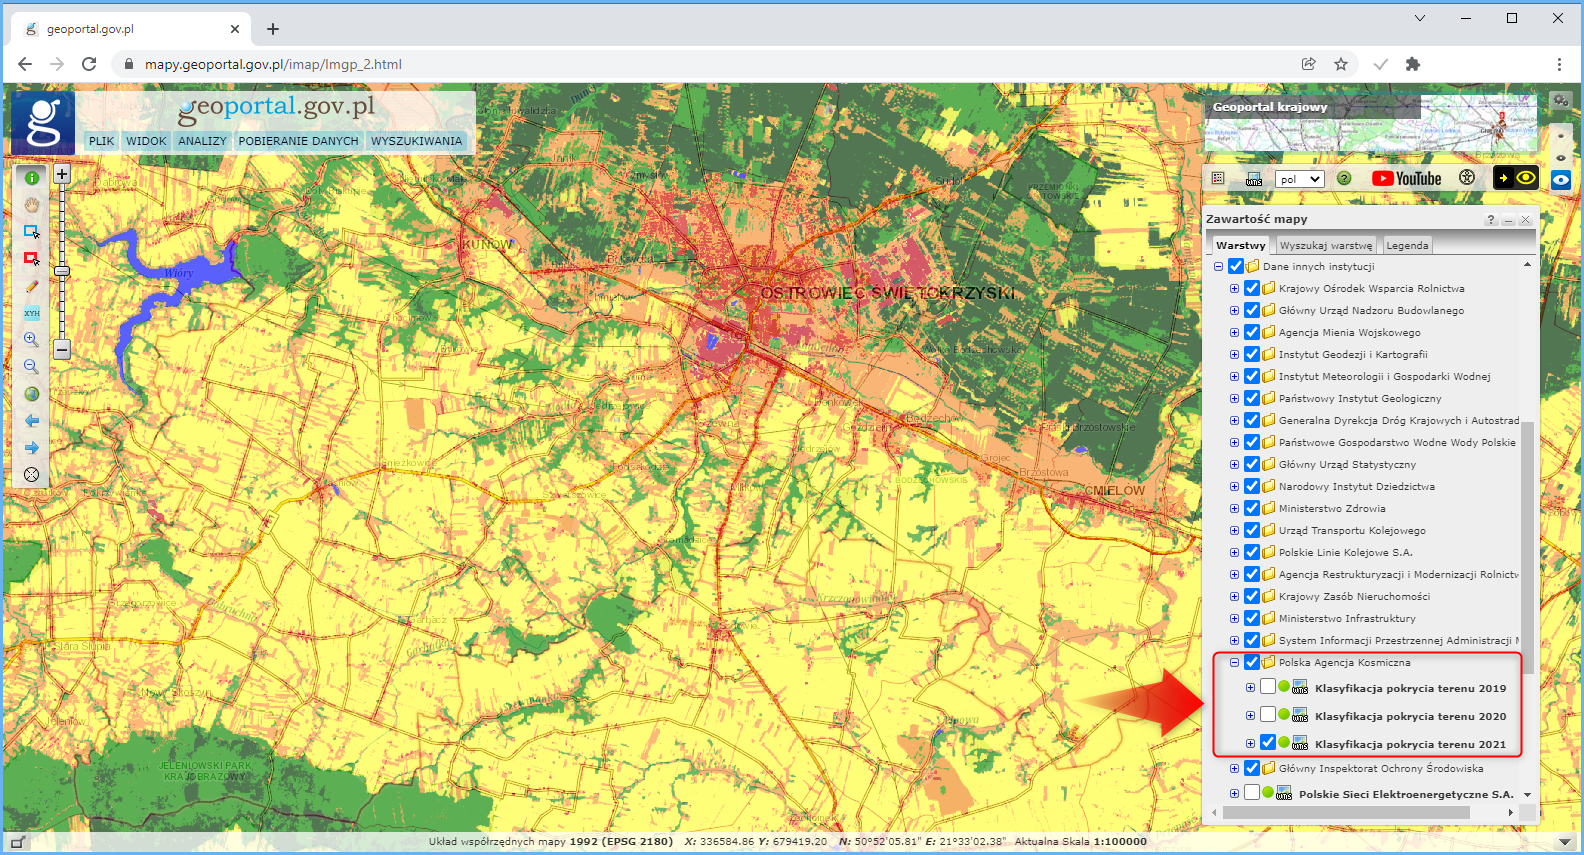 Ilustracja przestawia serwis mapowy geoportal.gov.pl wraz z widokiem na klasyfikację pokrycia terenu pochodzącym z warstwy o nazwie Klasyfikacja pokrycia terenu 2021 udostępnioną przez Polską Agencję Kosmiczną. 